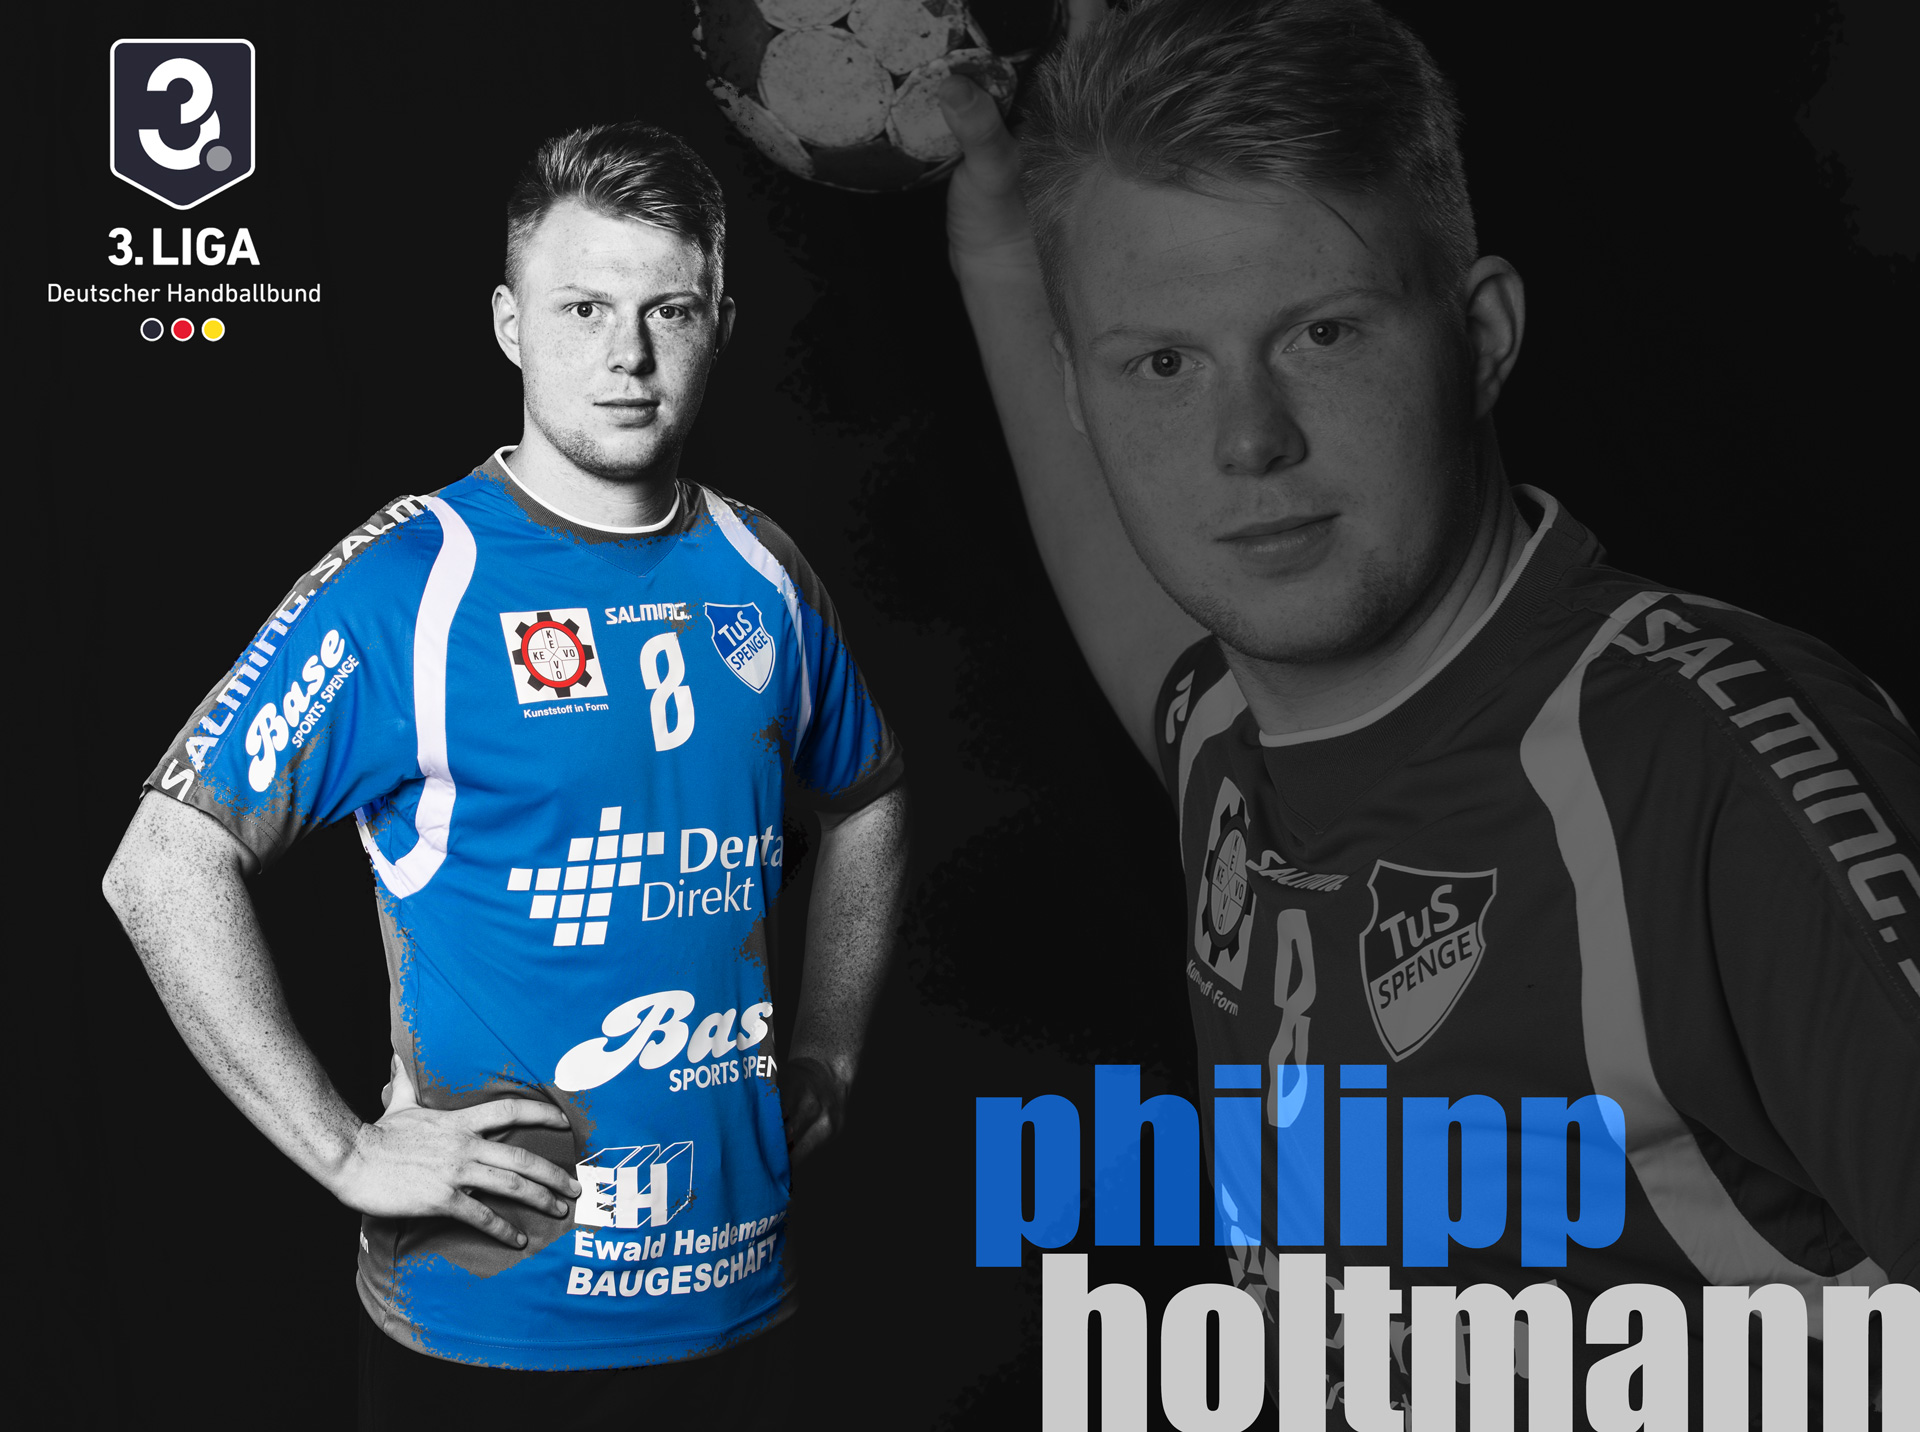 Philipp Holtmann